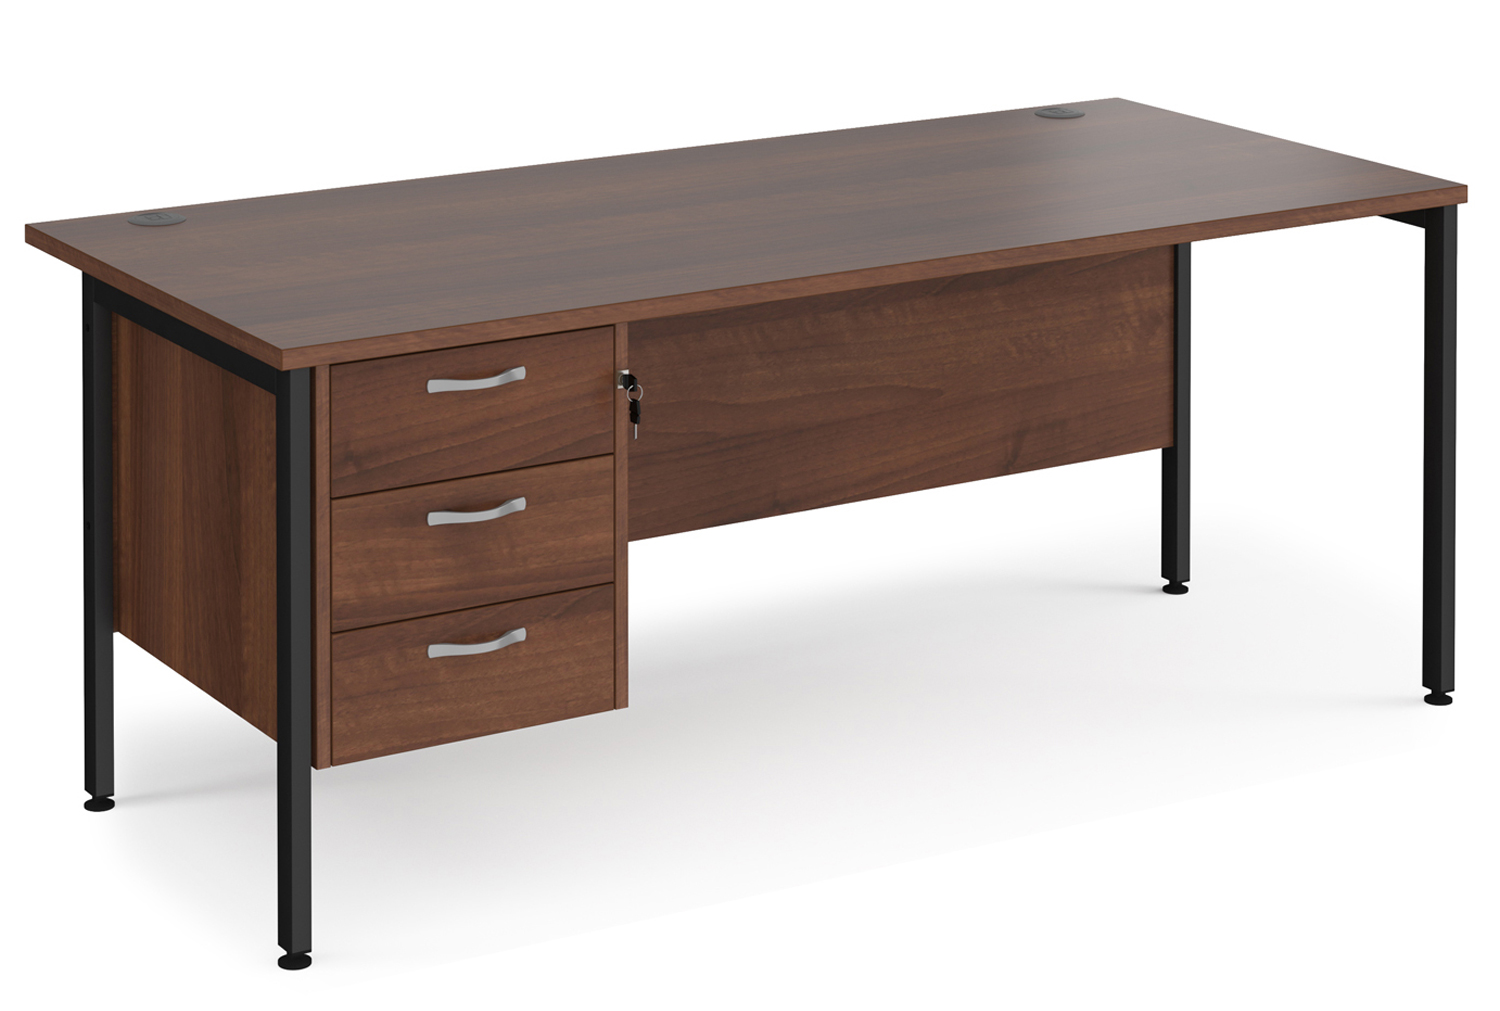 Value Line Deluxe H-Leg Rectangular Office Desk 3 Drawers (Black Legs), 180wx80dx73h (cm), Walnut